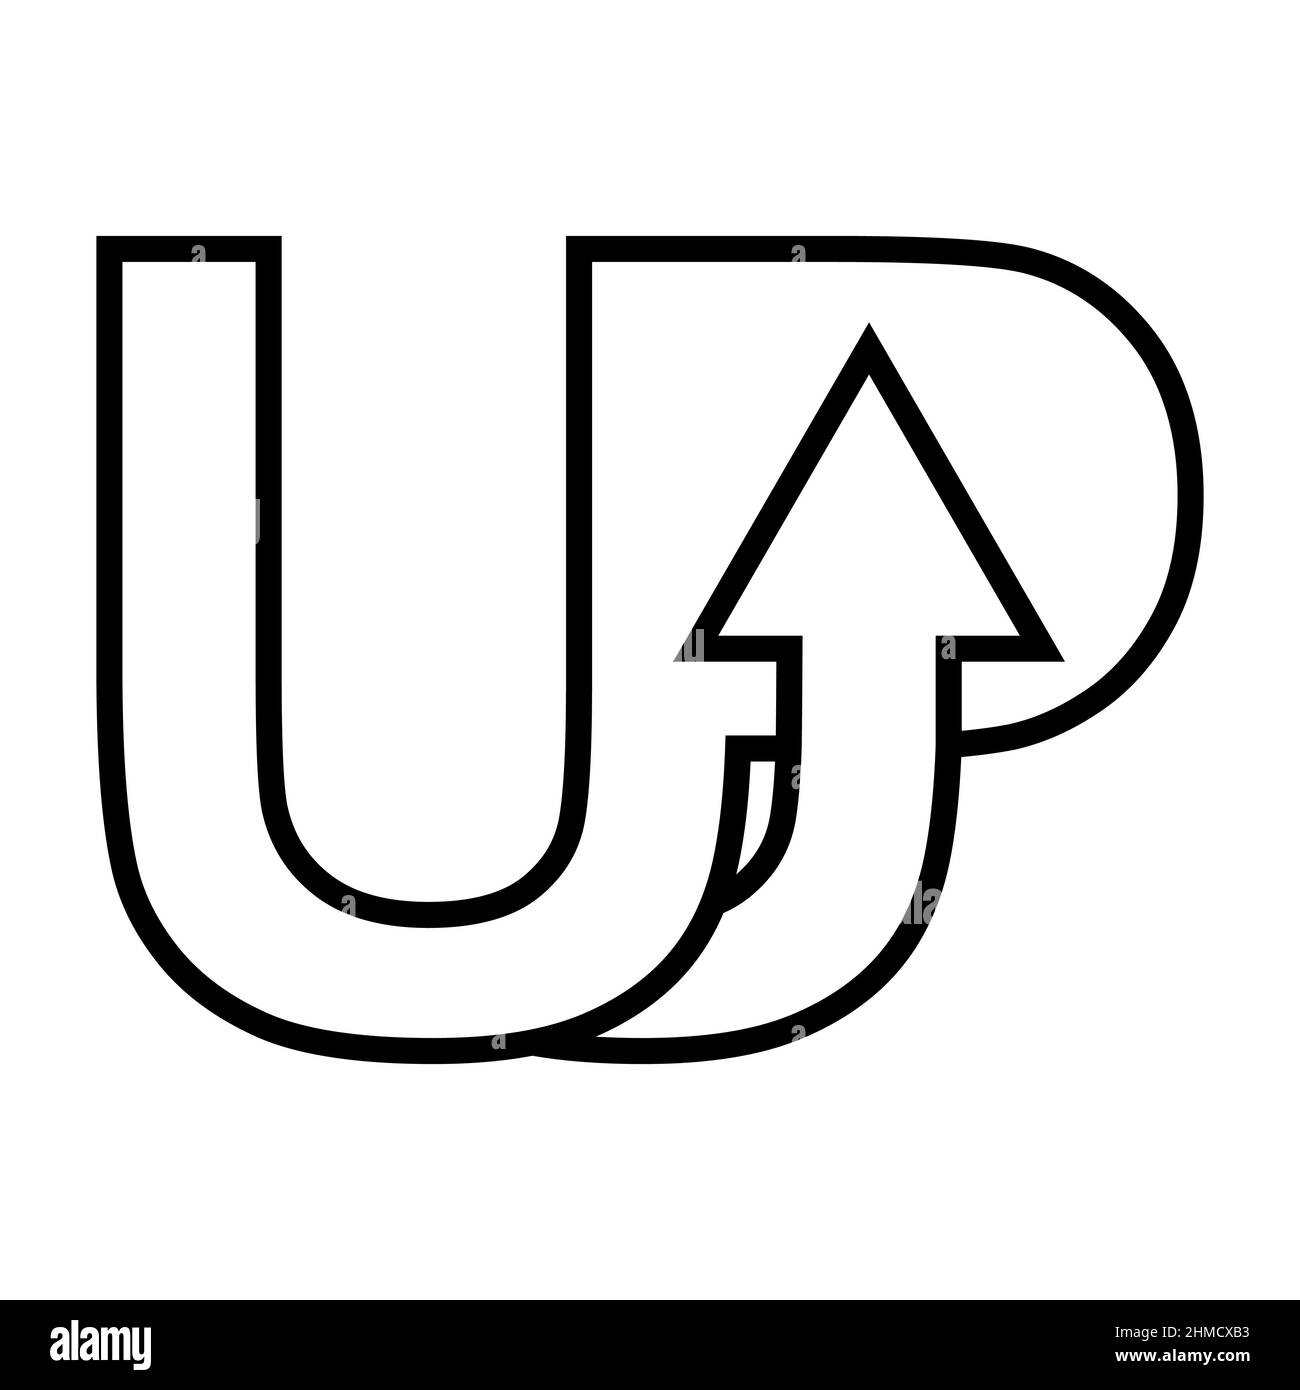 UP logo freccia di avvio, idea di aumentare la crescita di carriera segno start UP Illustrazione Vettoriale